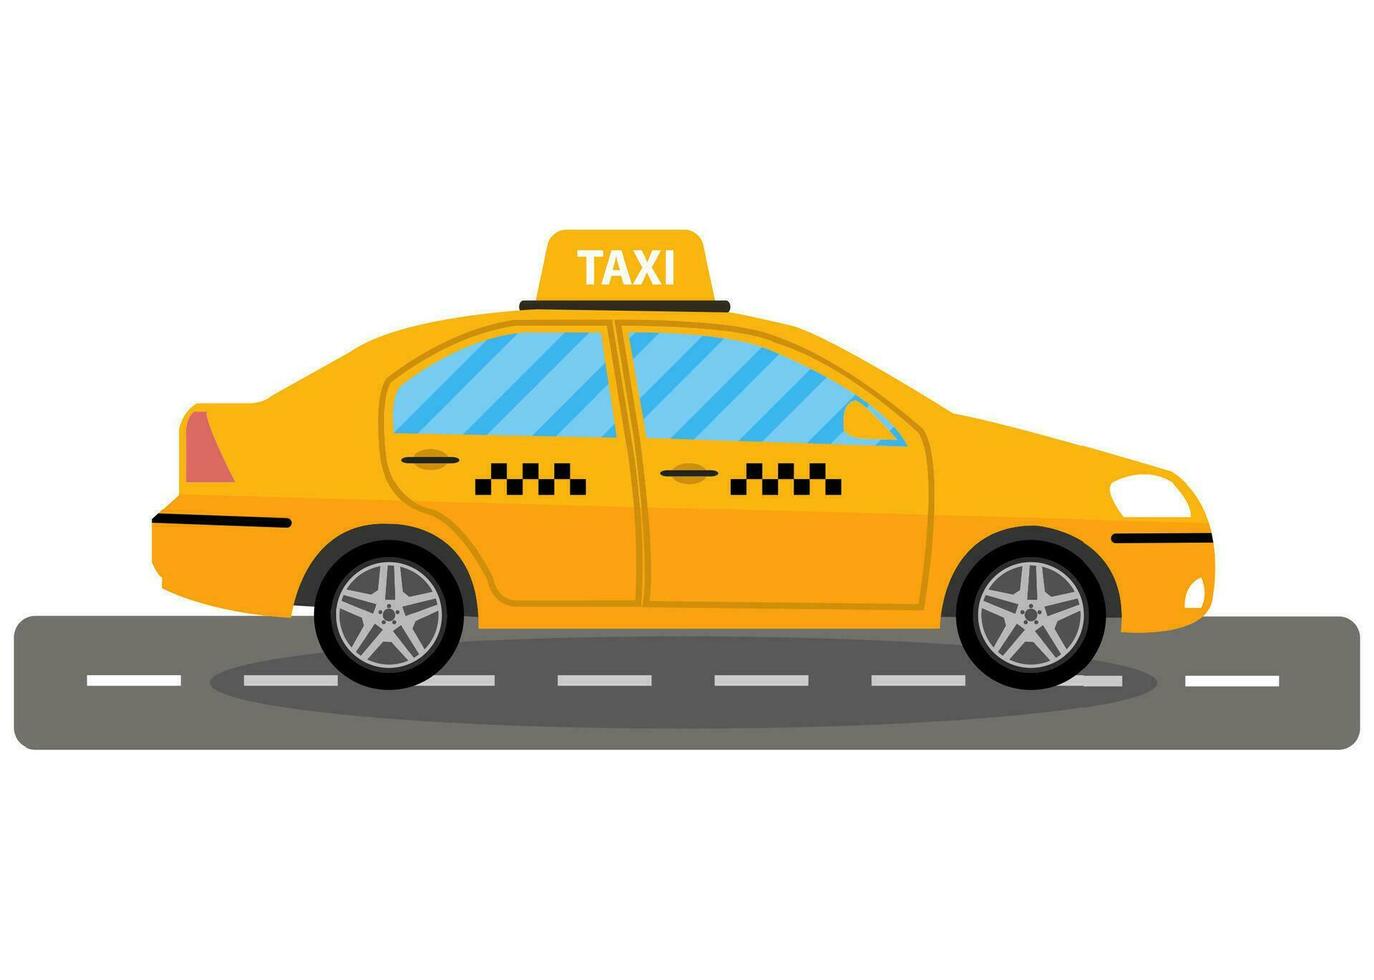 gul taxi bil på väg, taxi ikon, ring upp taxi begrepp, vektor illustration i enkel platt design isolerat på vit bakgrund